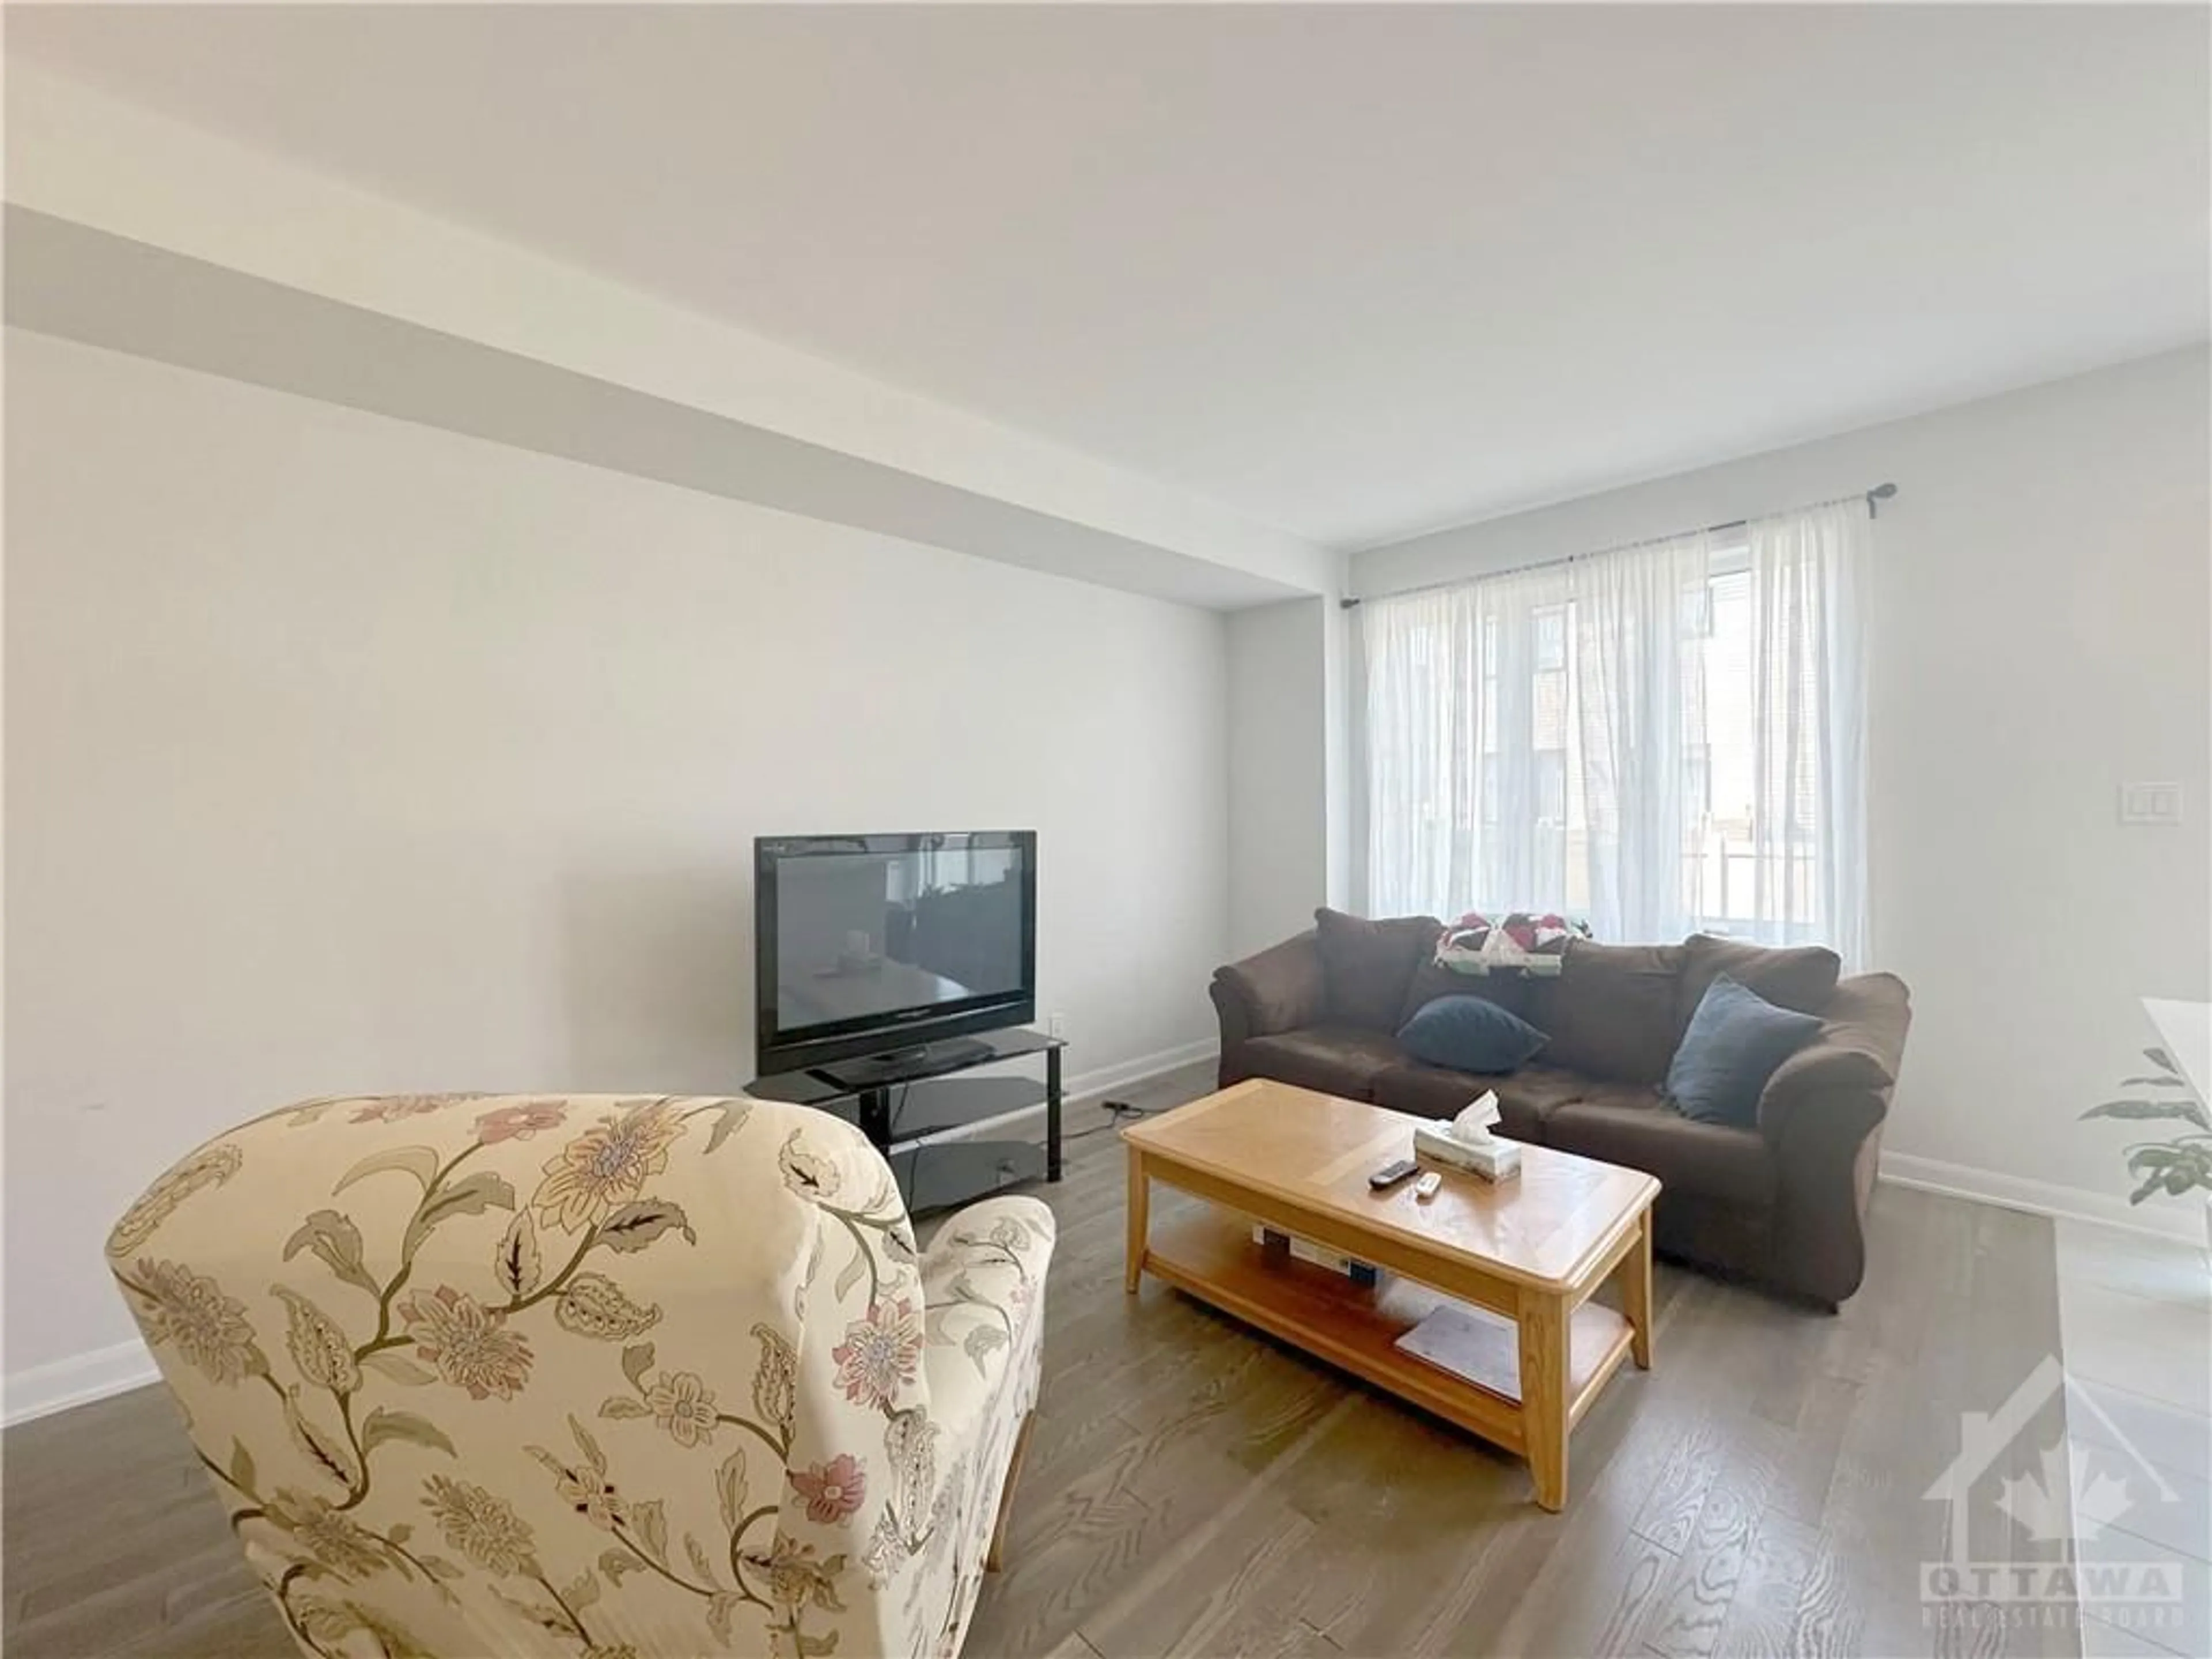 Living room for 301 DRUMLISH Lane, Ottawa Ontario K2J 6Y1